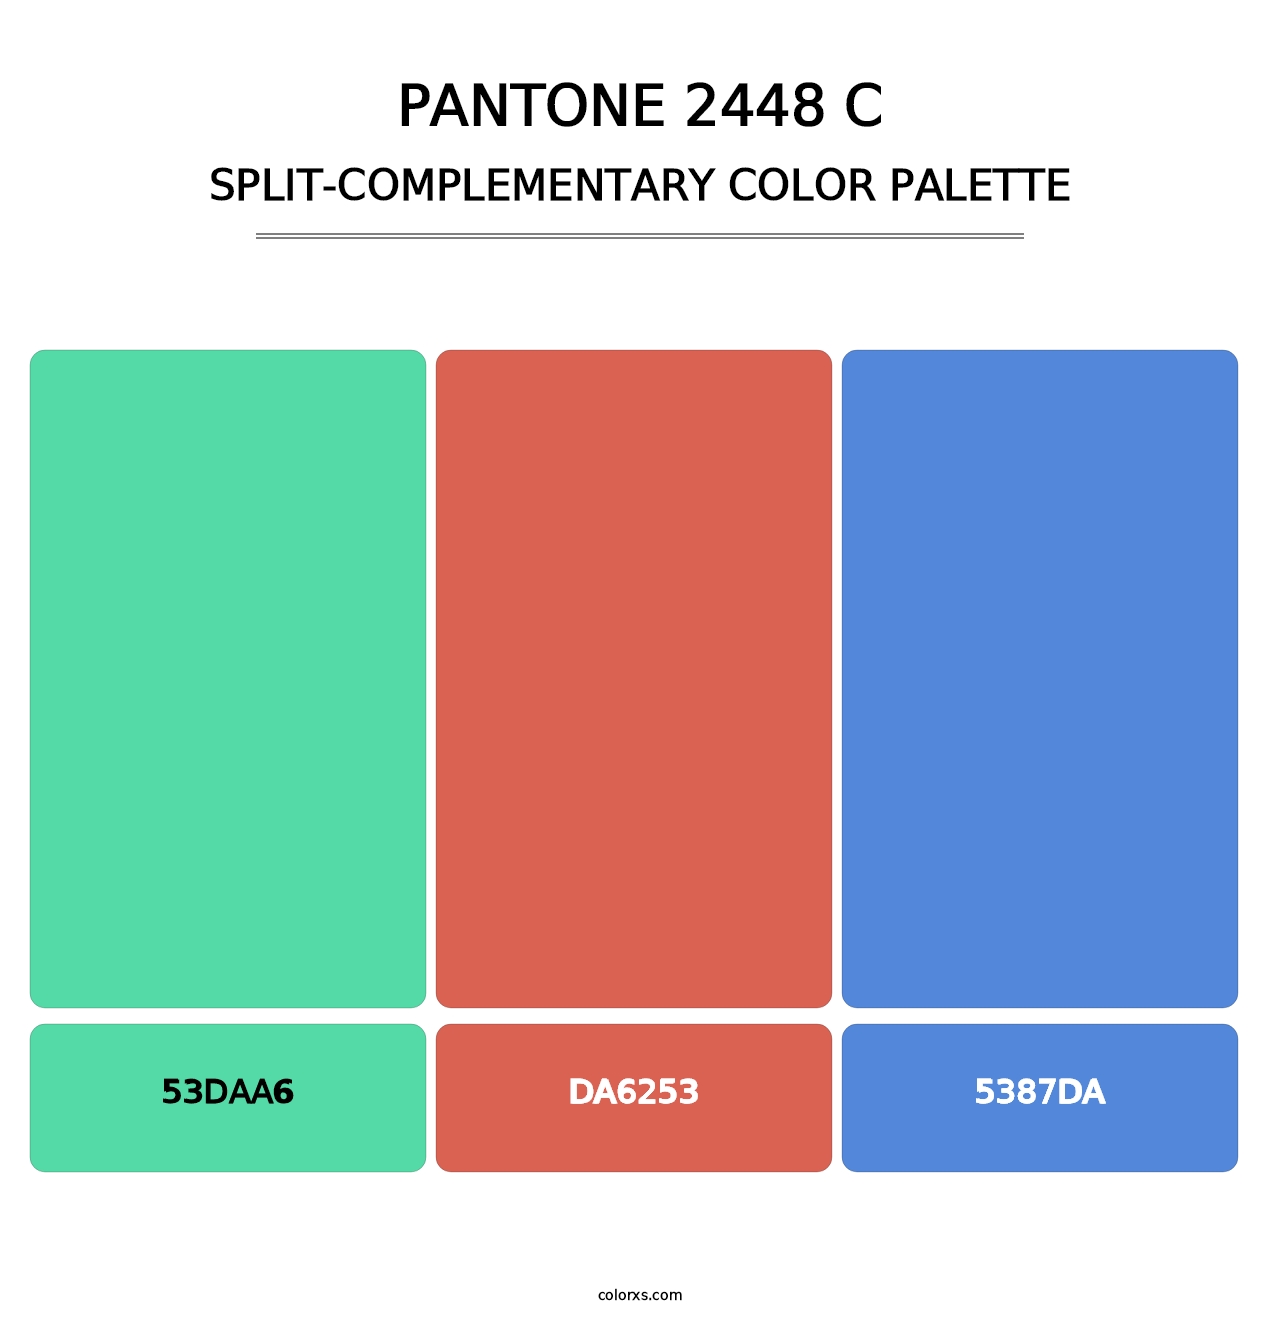 PANTONE 2448 C - Split-Complementary Color Palette